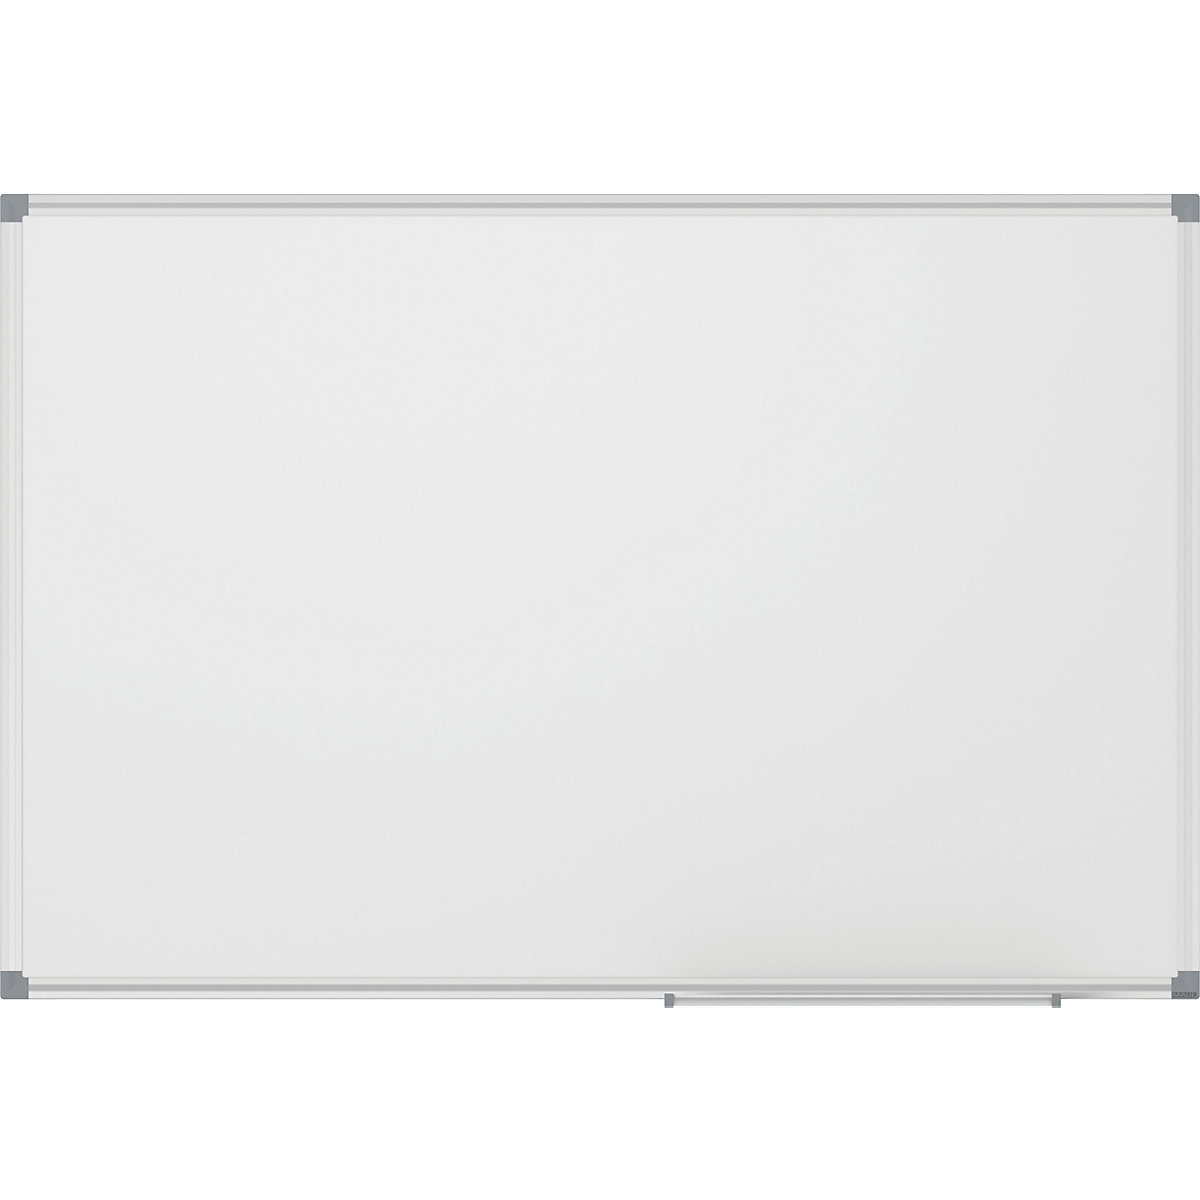 MAUL Whiteboard MAULstandard, weiß, kunststoffbeschichtet, BxH 1800 x 900 mm